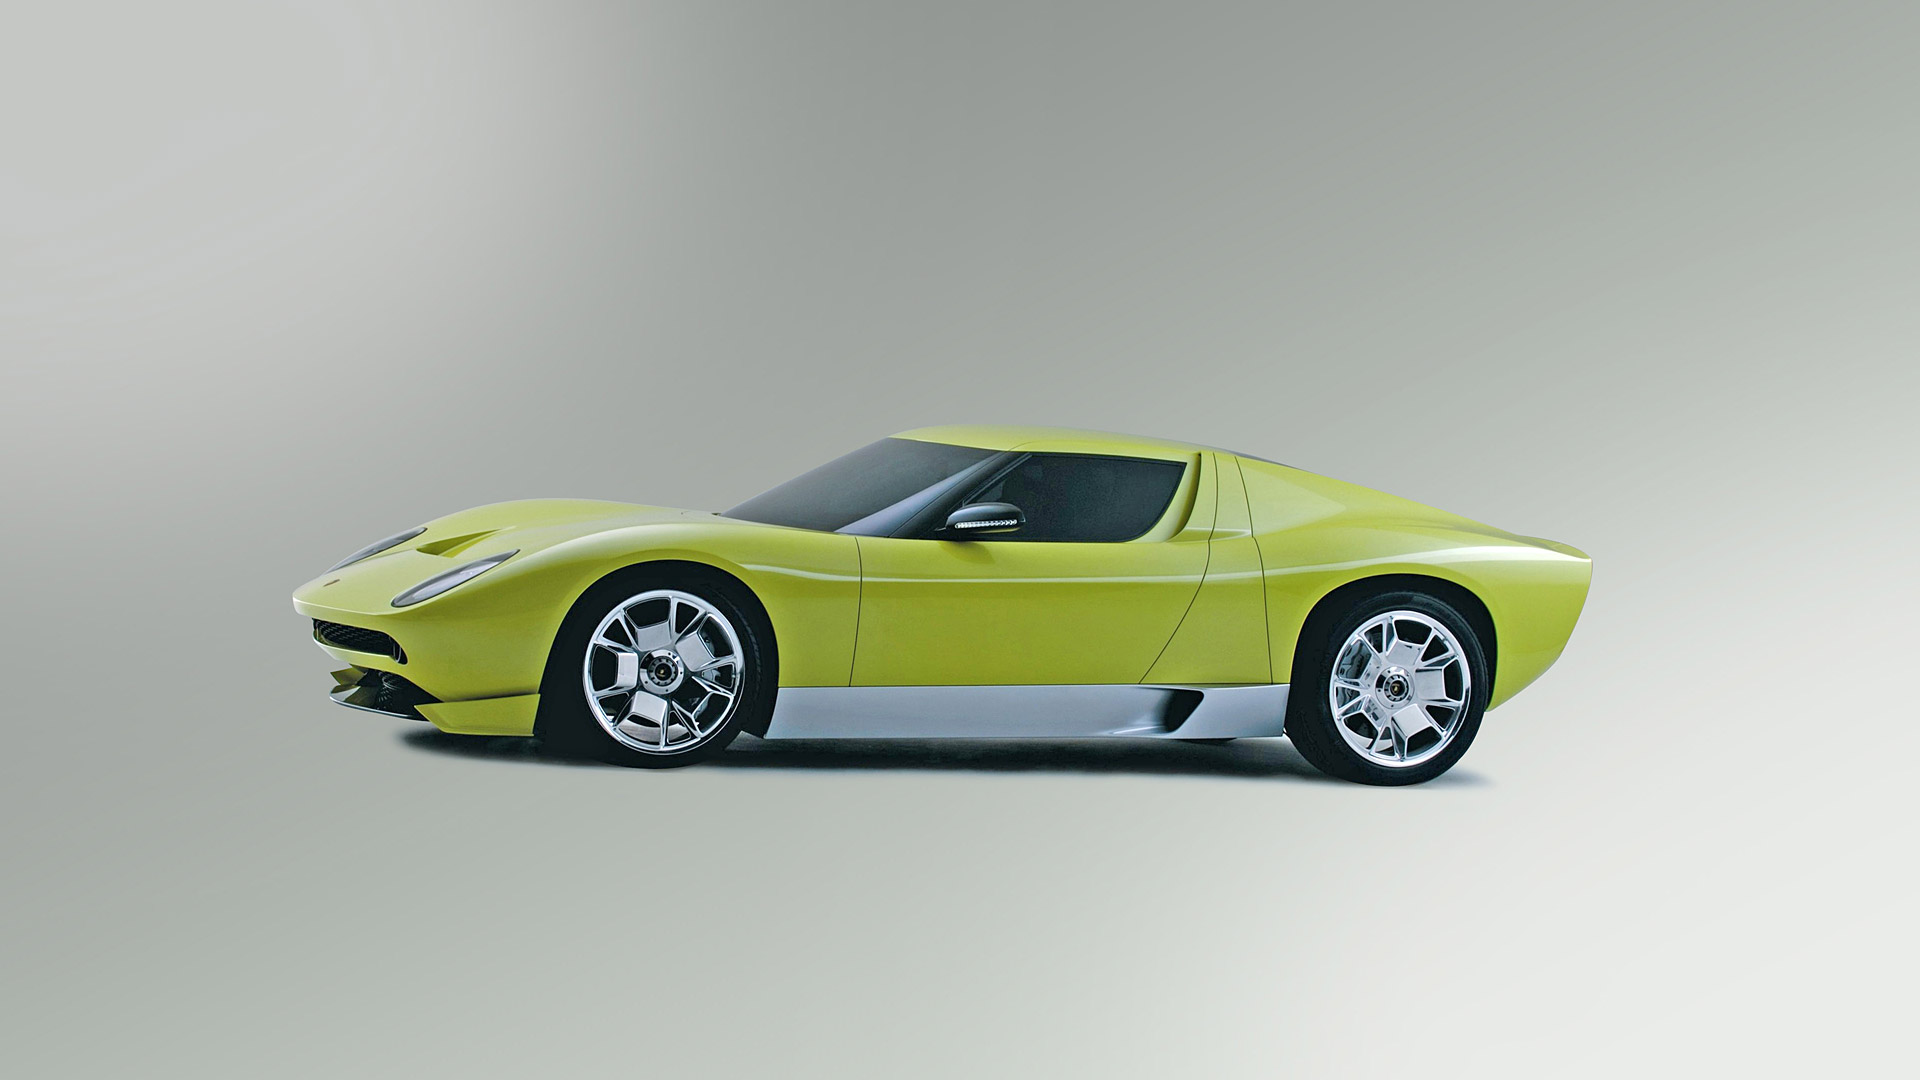  2006 Lamborghini Miura Concept Wallpaper.